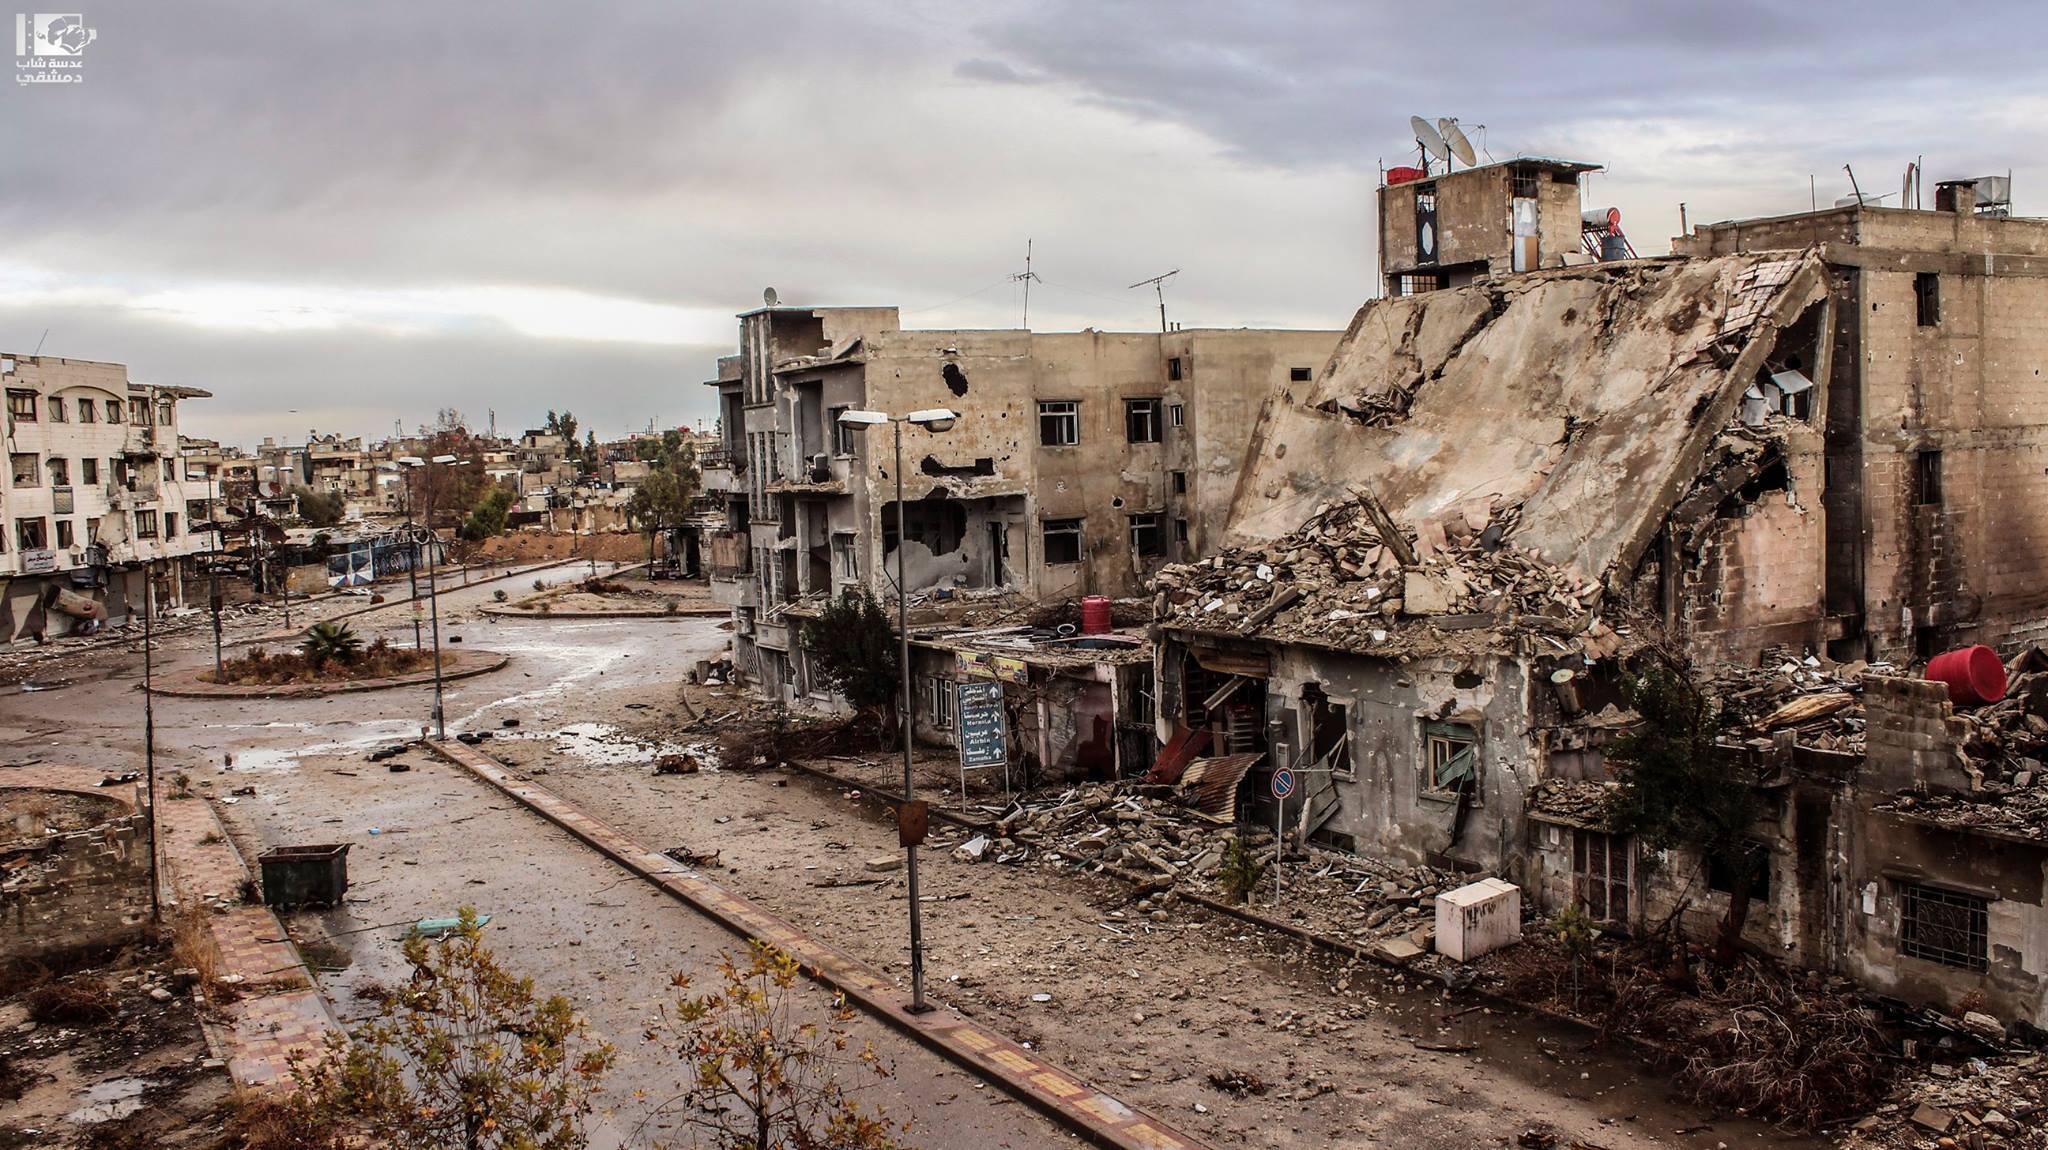 Α.Γούτα: Άμαχοι εγκαταλείπουν τον θύλακα υπό την προστασία του συριακού Στρατού